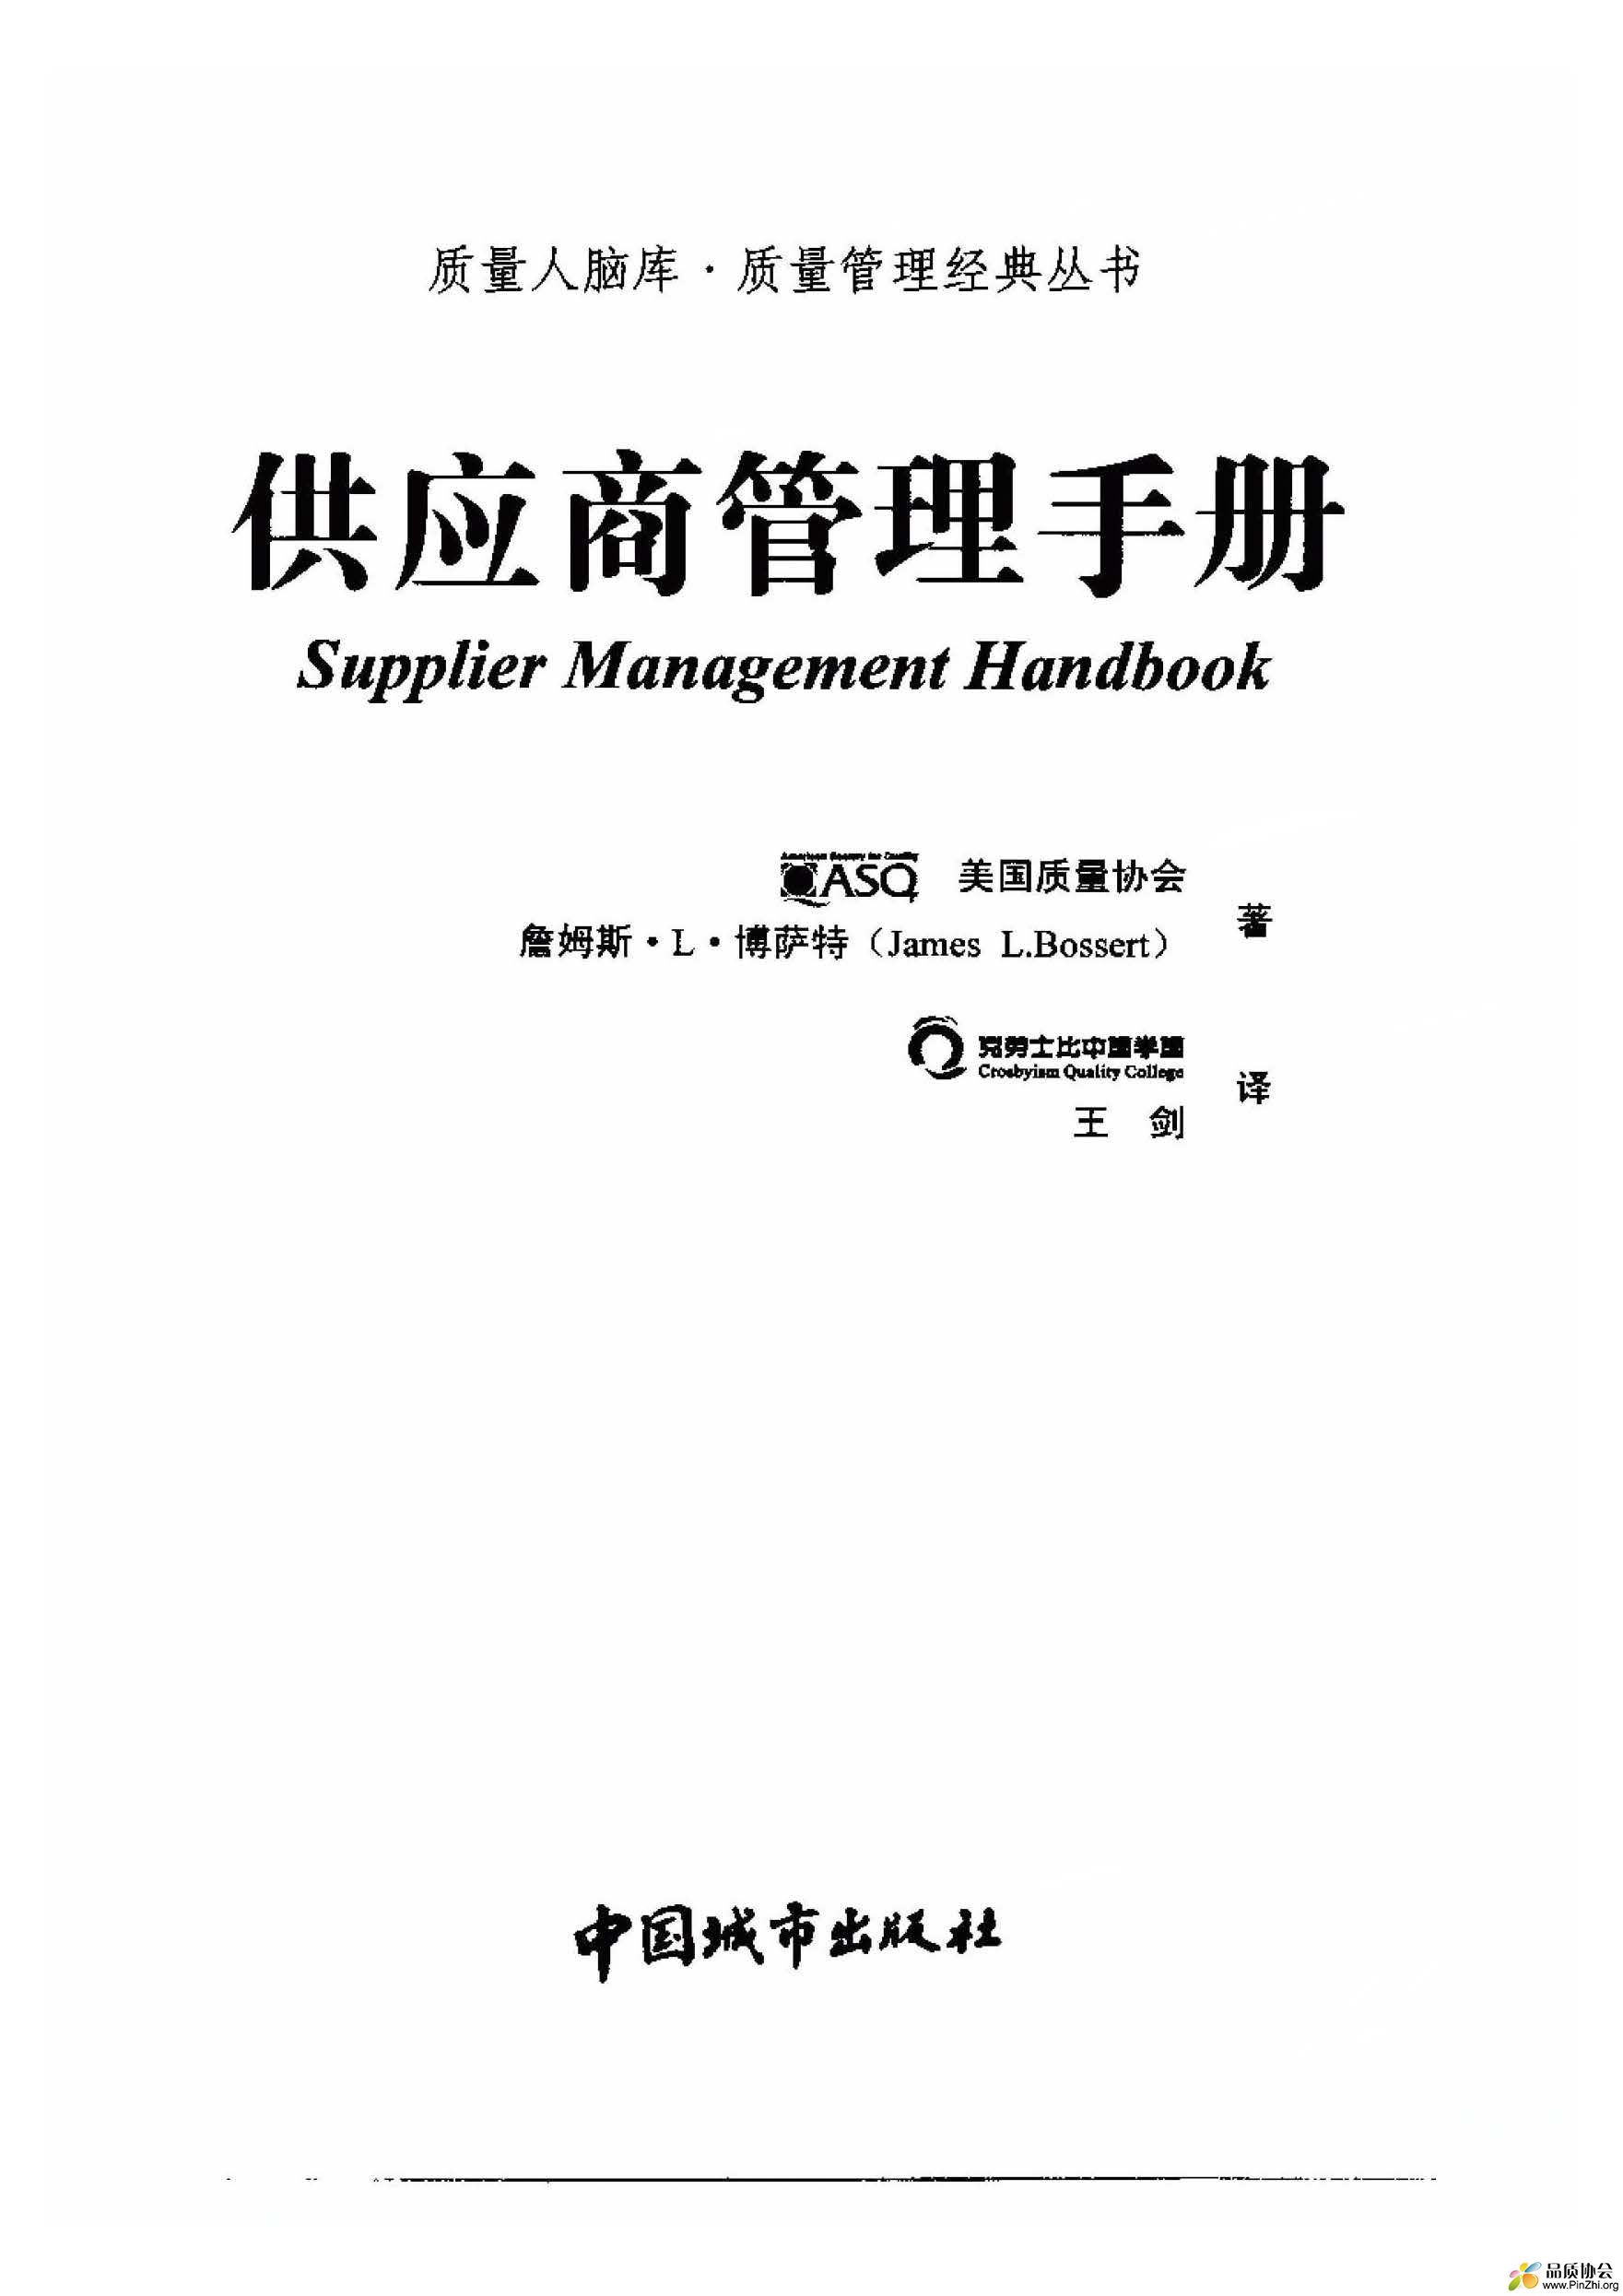 供应商管理手册 2.jpg